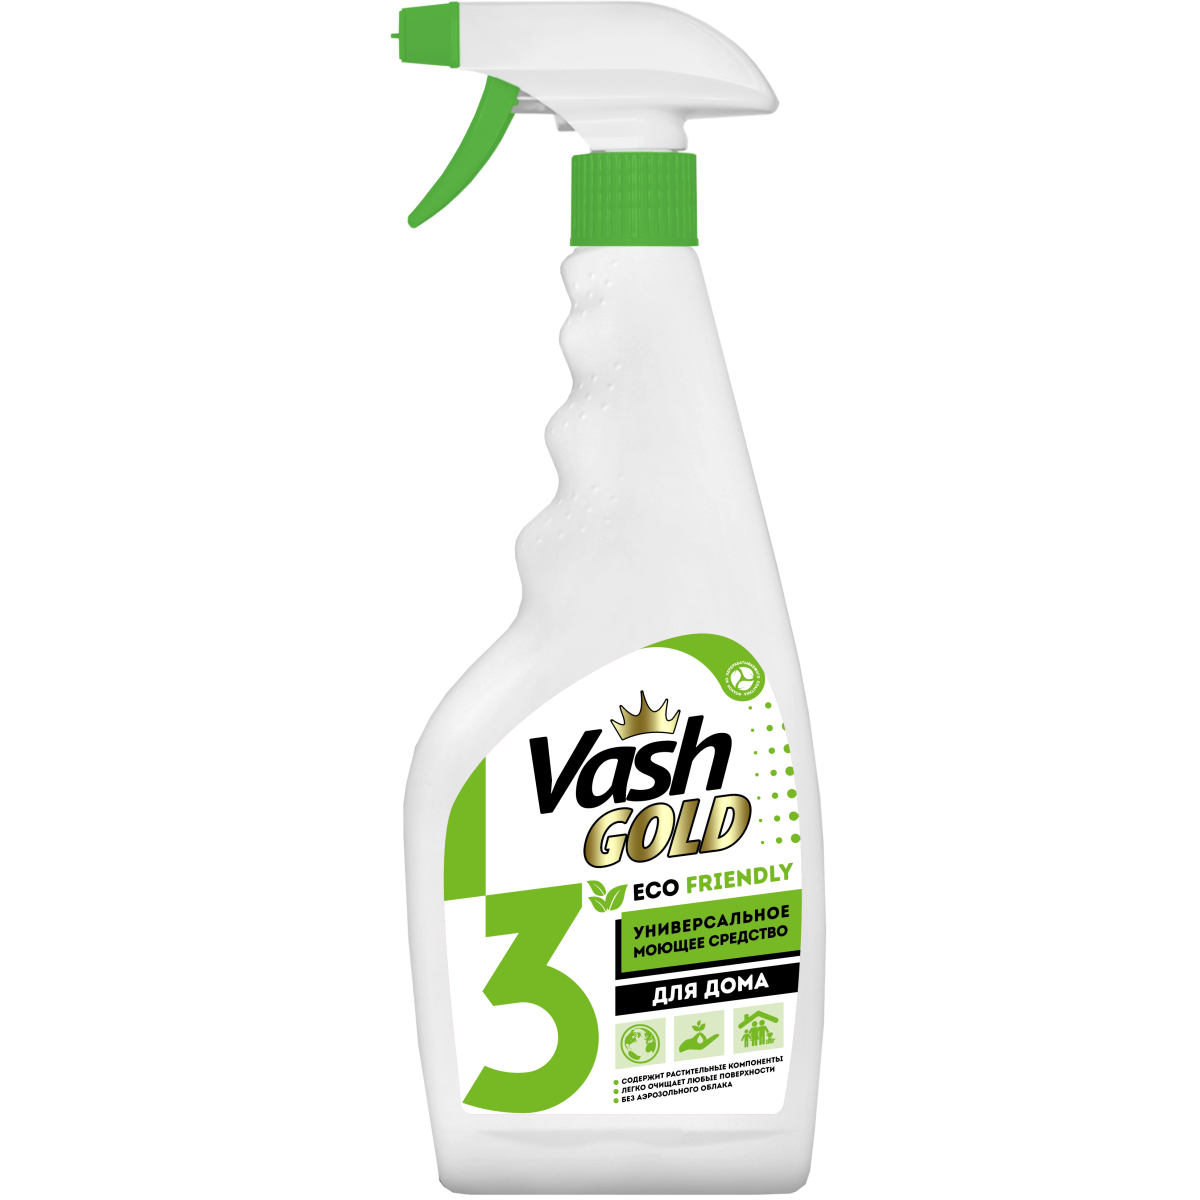 Средство чистящее Vash Gold Eco Friendly универсальное для дома, спрей, 500 мл чистящее средство для уборки дома